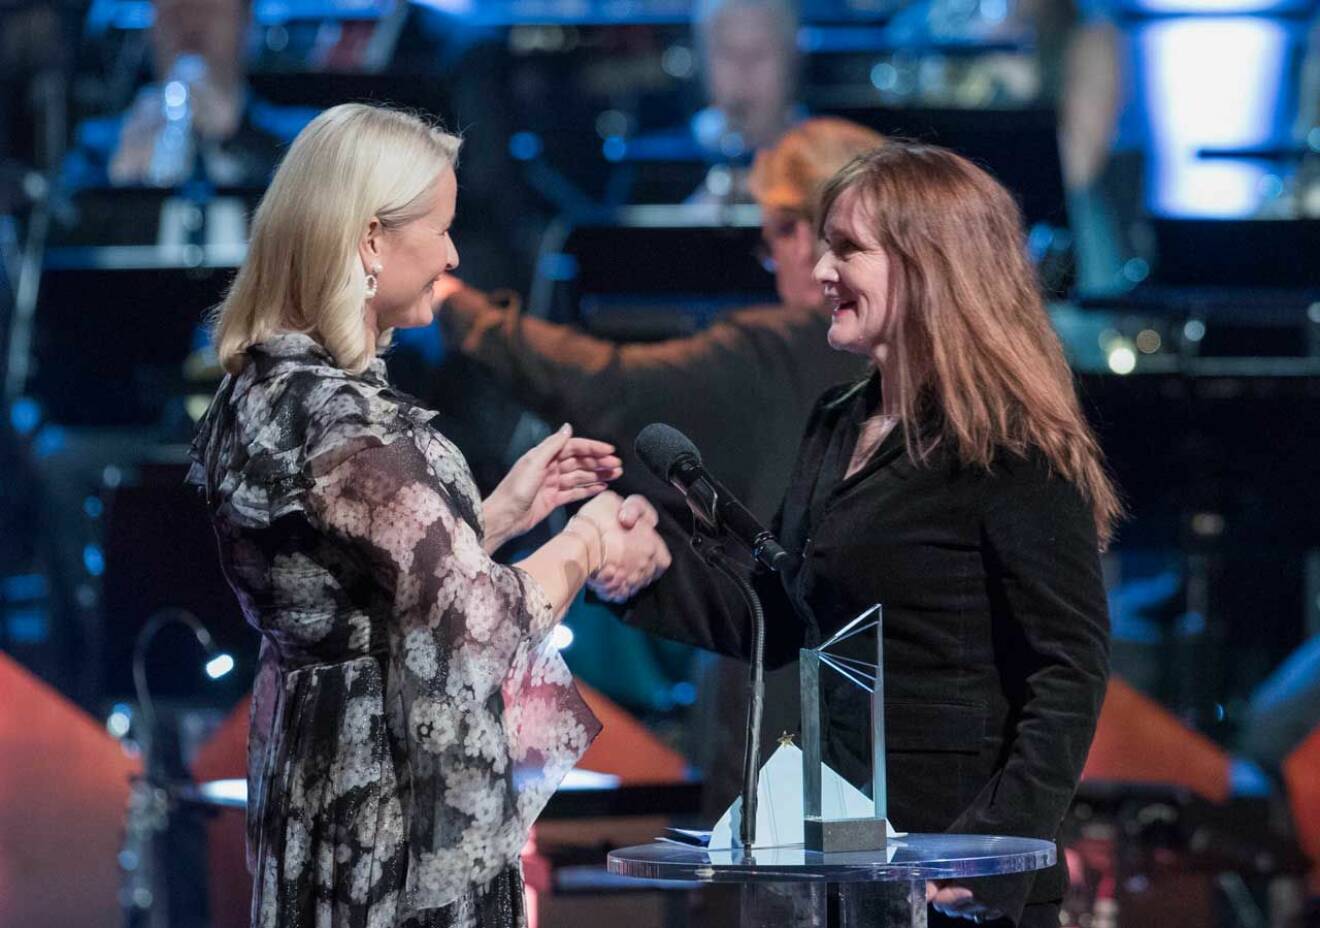 Kronprinsessan Mette-Marit lyckönskar den isländska författaren Audur Ava Olafsdottir som får Nordiska Rådets litteraturpris.